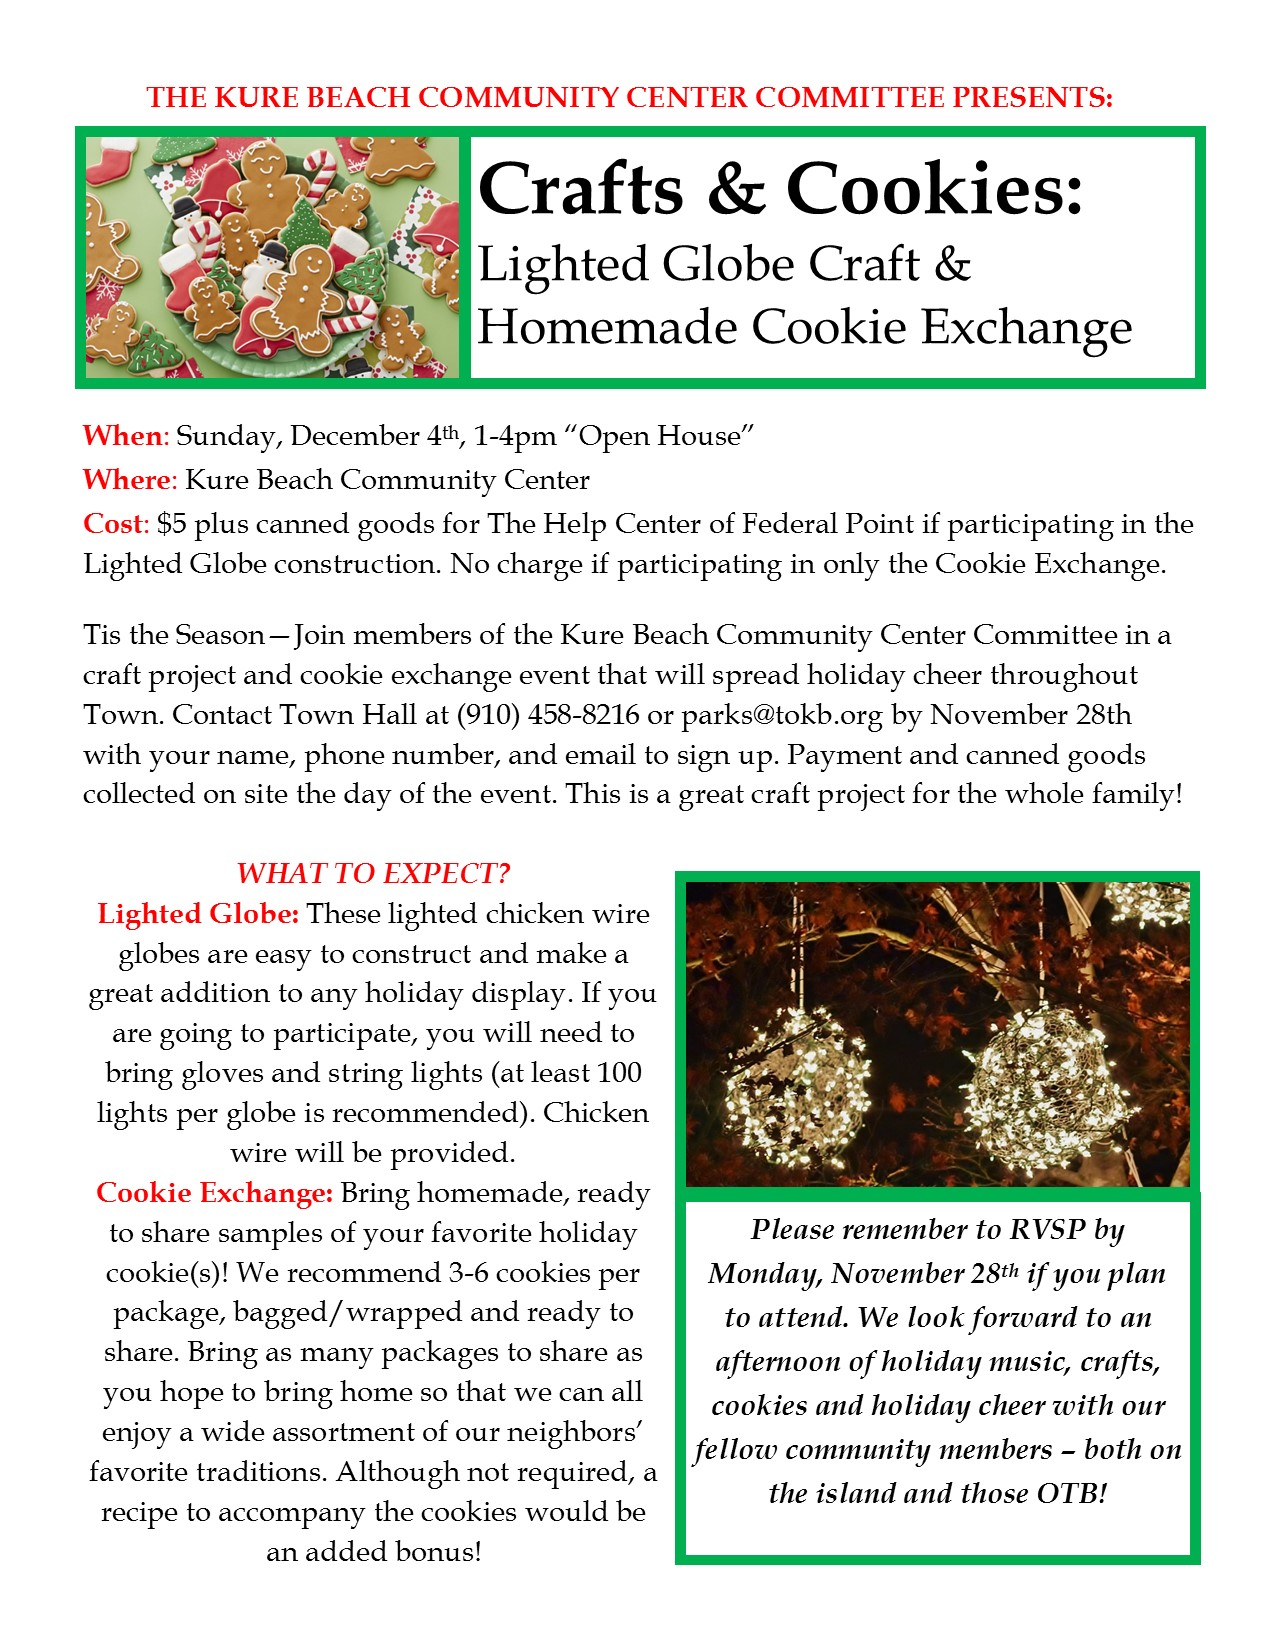 Crafts & Cookies Flyer